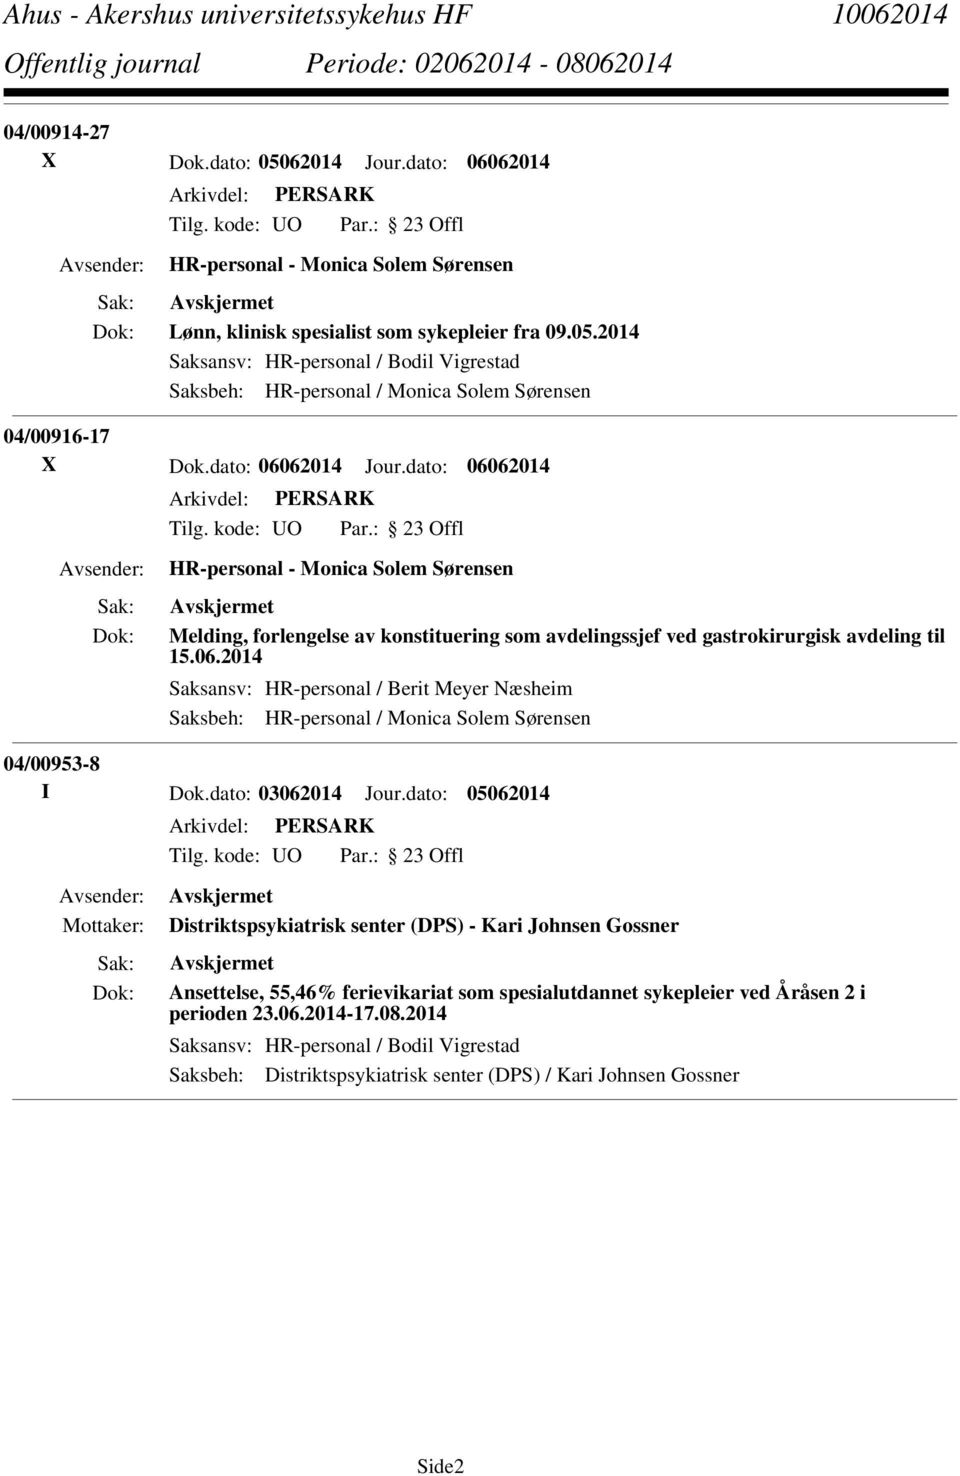 dato: 03062014 Jour.dato: 05062014 Distriktspsykiatrisk senter (DPS) - Kari Johnsen Gossner Ansettelse, 55,46% ferievikariat som spesialutdannet sykepleier ved Åråsen 2 i perioden 23.06.2014-17.08.